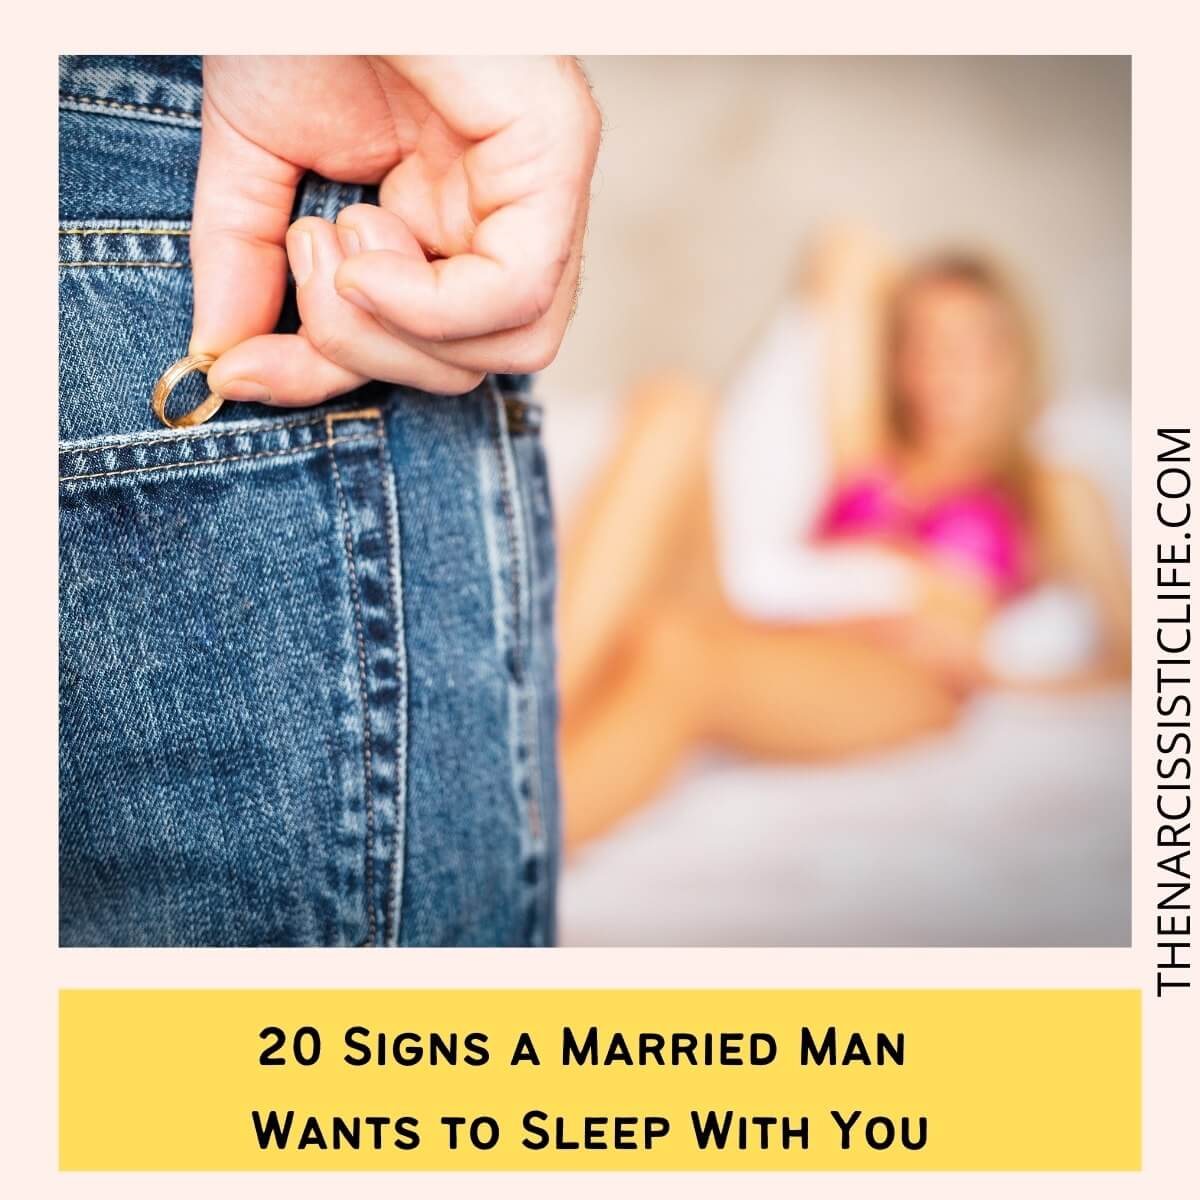 married men sex desires